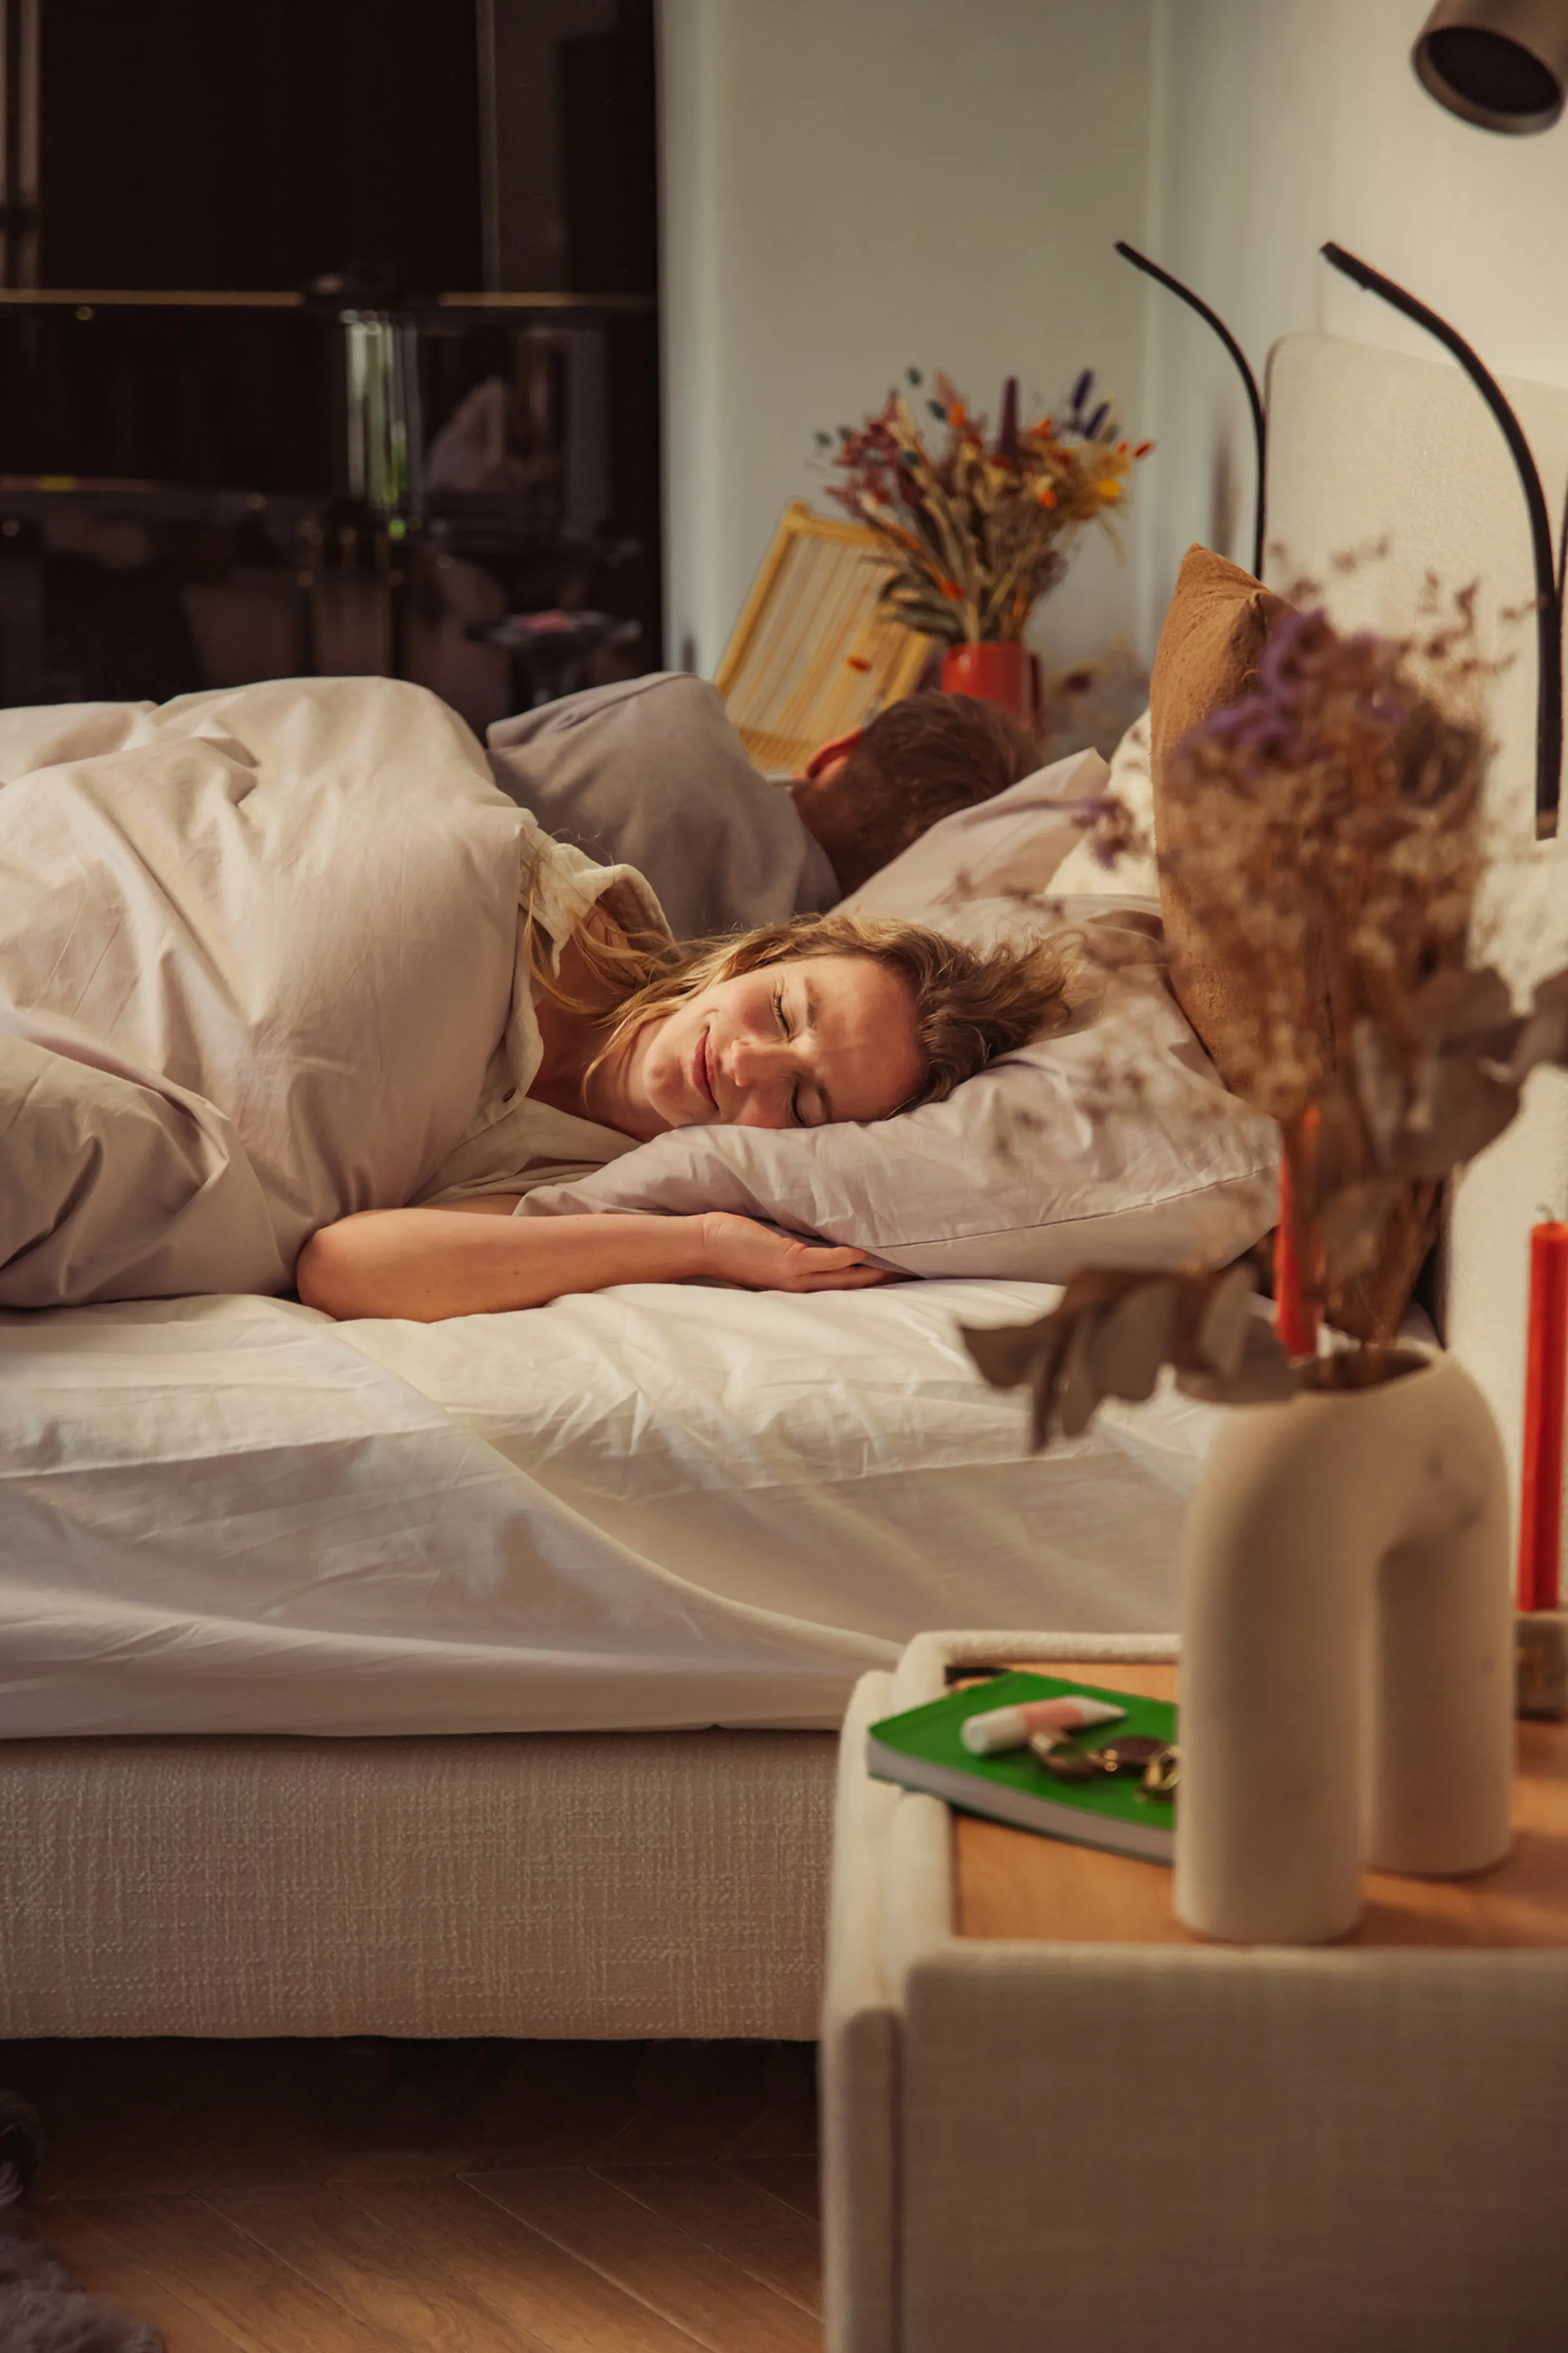 Is slapen zonder kussen gezond?